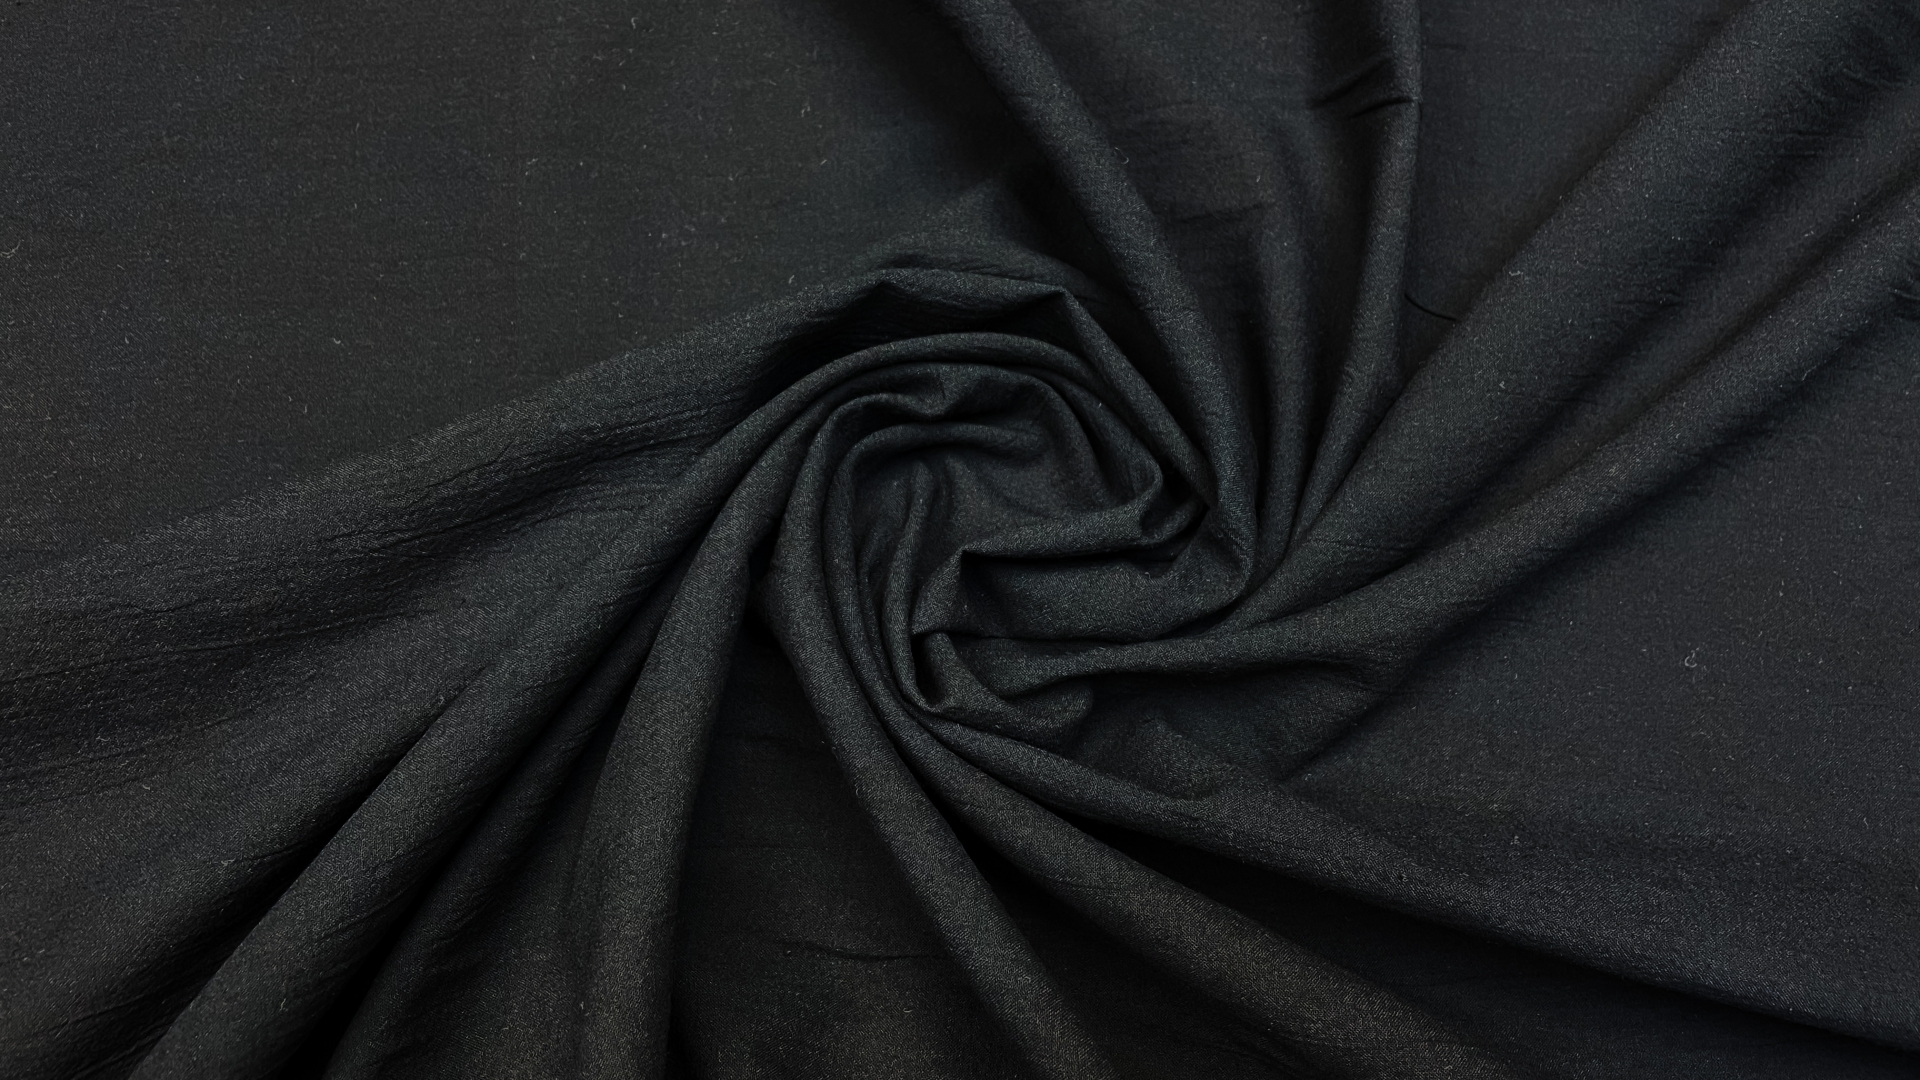 Хлопковая марлевка в чёрном цвете. Имеет ряд преимуществ за счет невесомости полотна,
гигроскопичности, преобладает  
превосходным воздухообменом и 
гипоаллергенна. Отлично подойдет для пошива платьев, рубашек, в том числе для пошива домашней одежды.